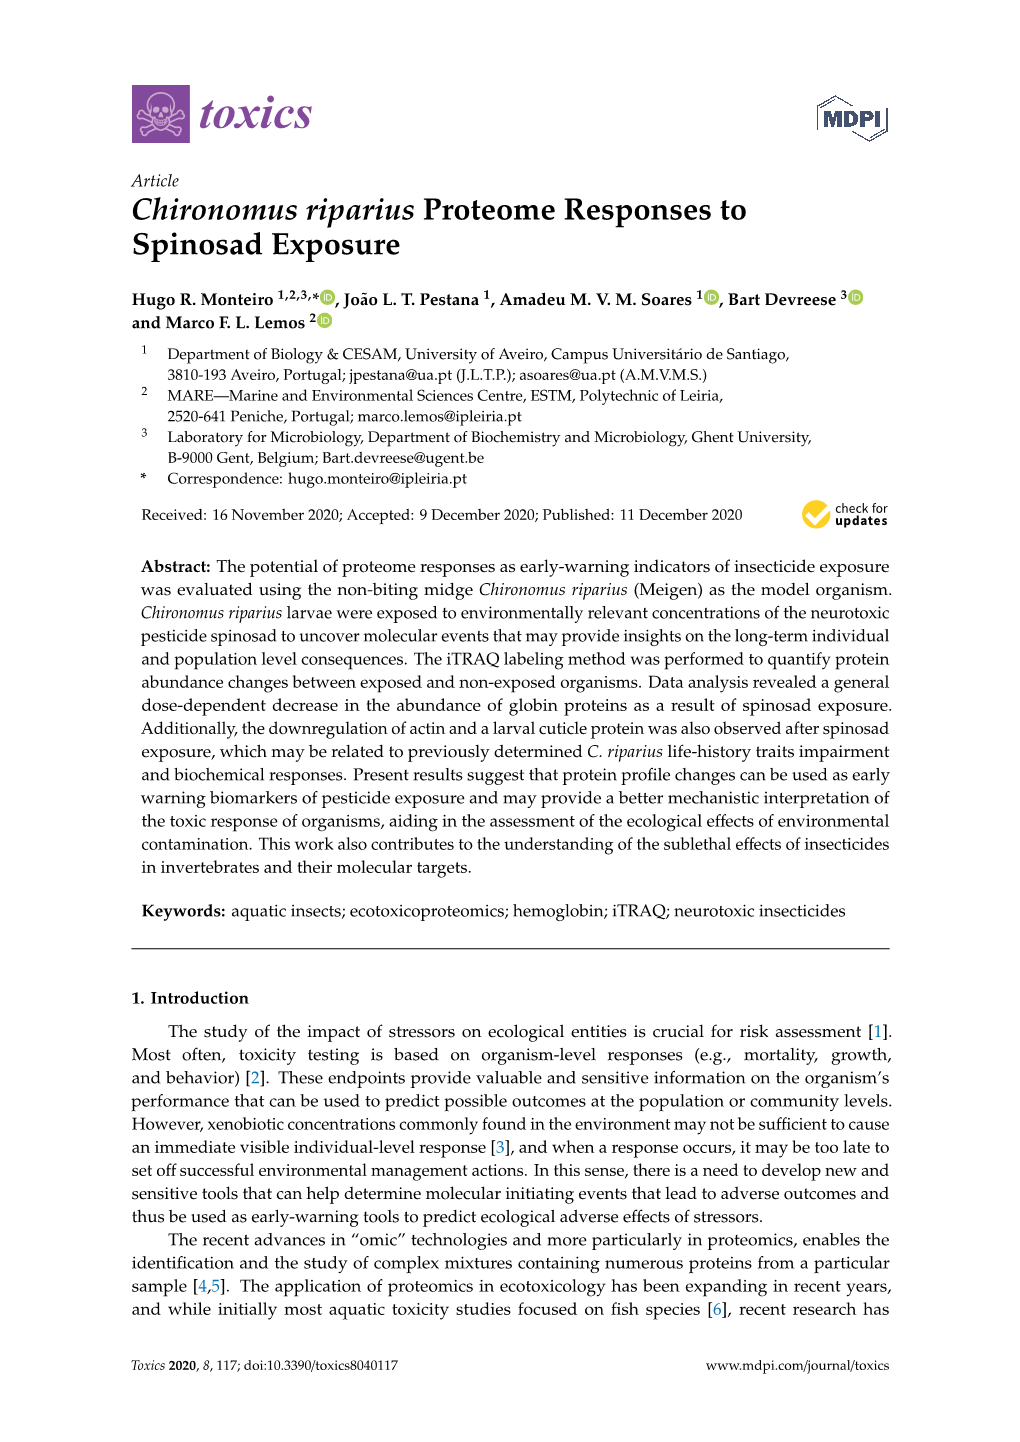 Chironomus Riparius Proteome Responses to Spinosad Exposure